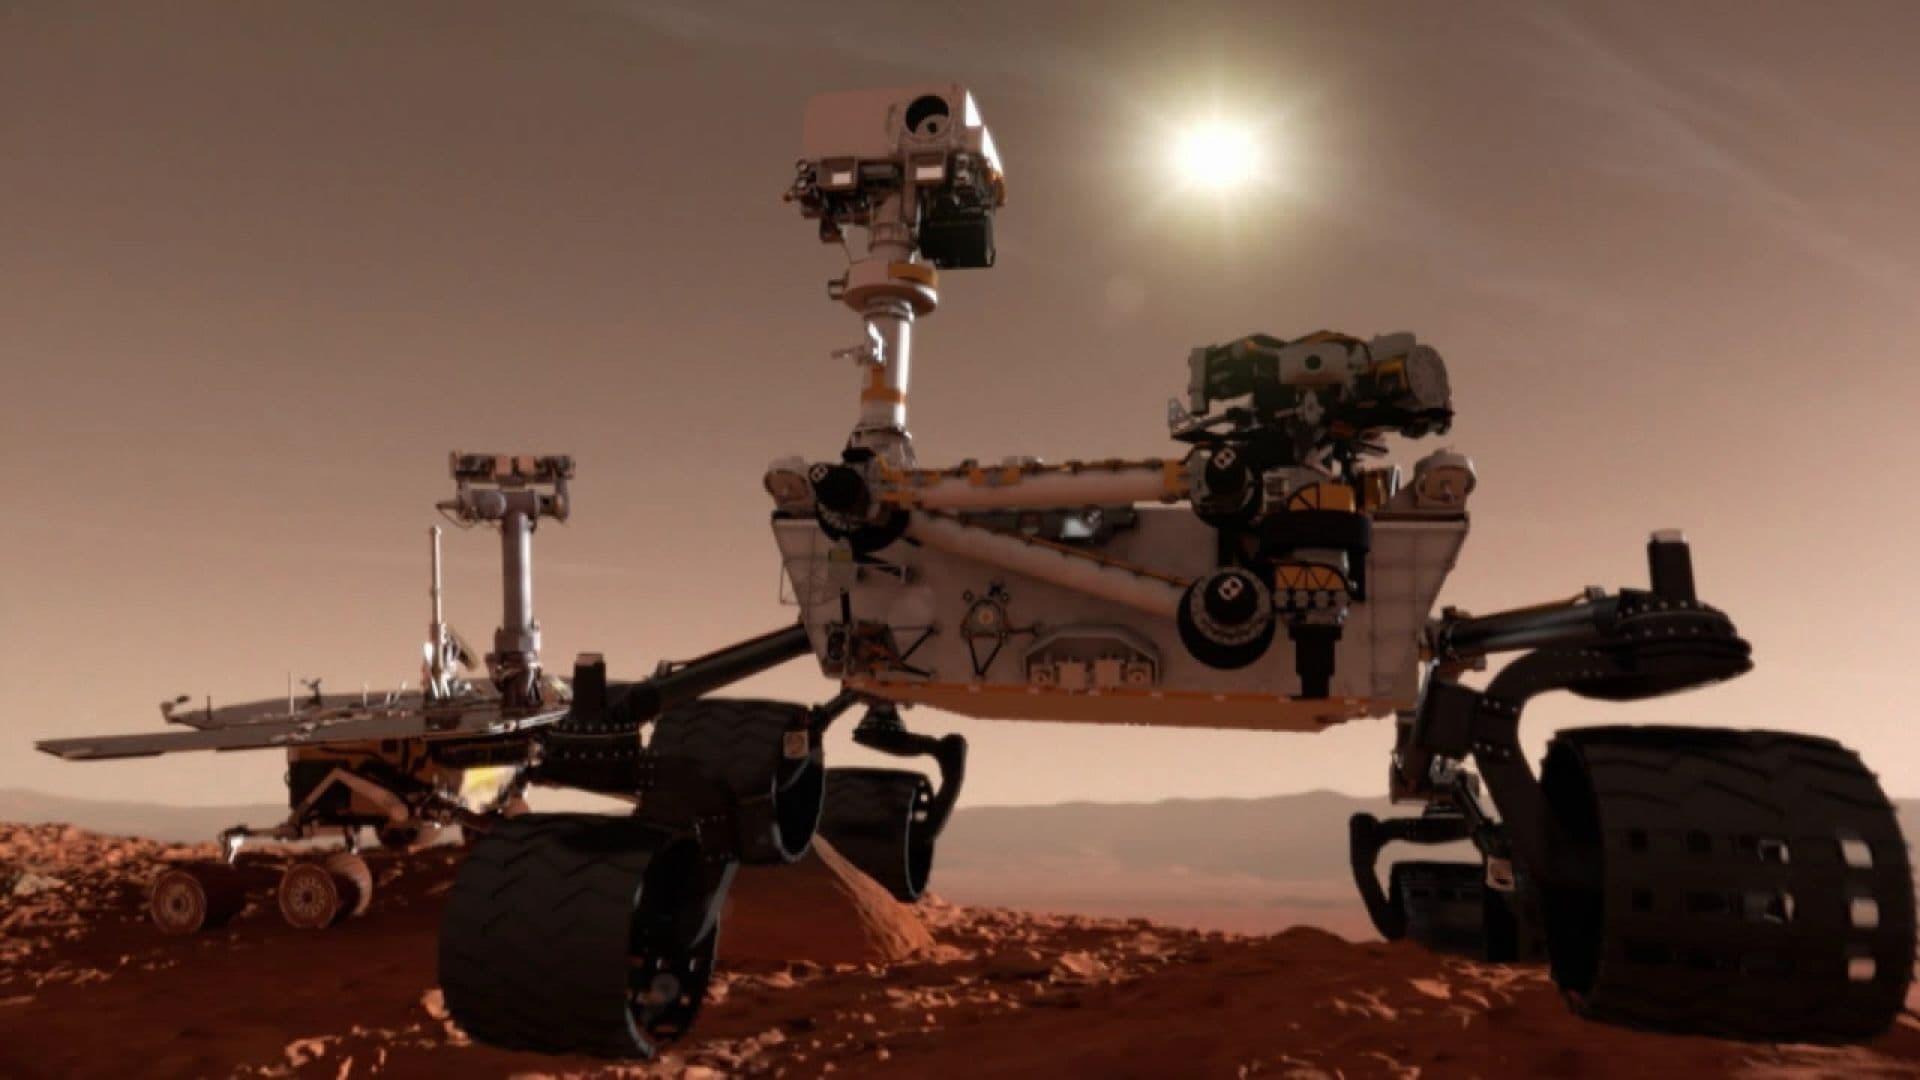 Martian Mega Rover backdrop